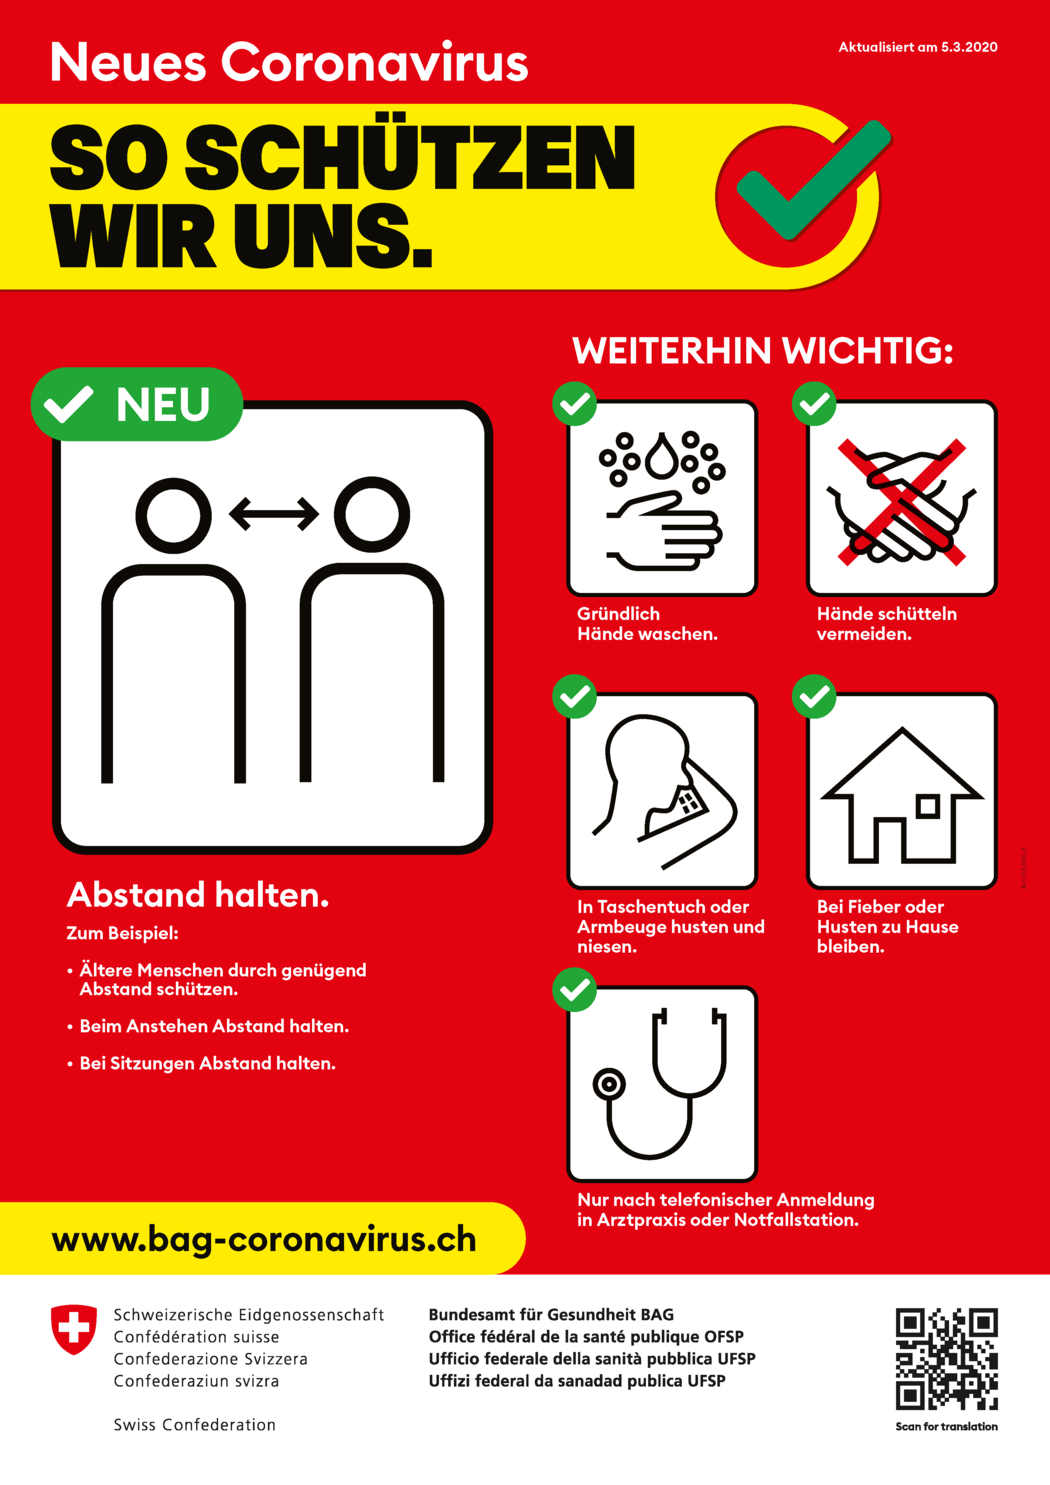 plakat_neues_coronavirus_so_schuetzen_wir_uns (1).png